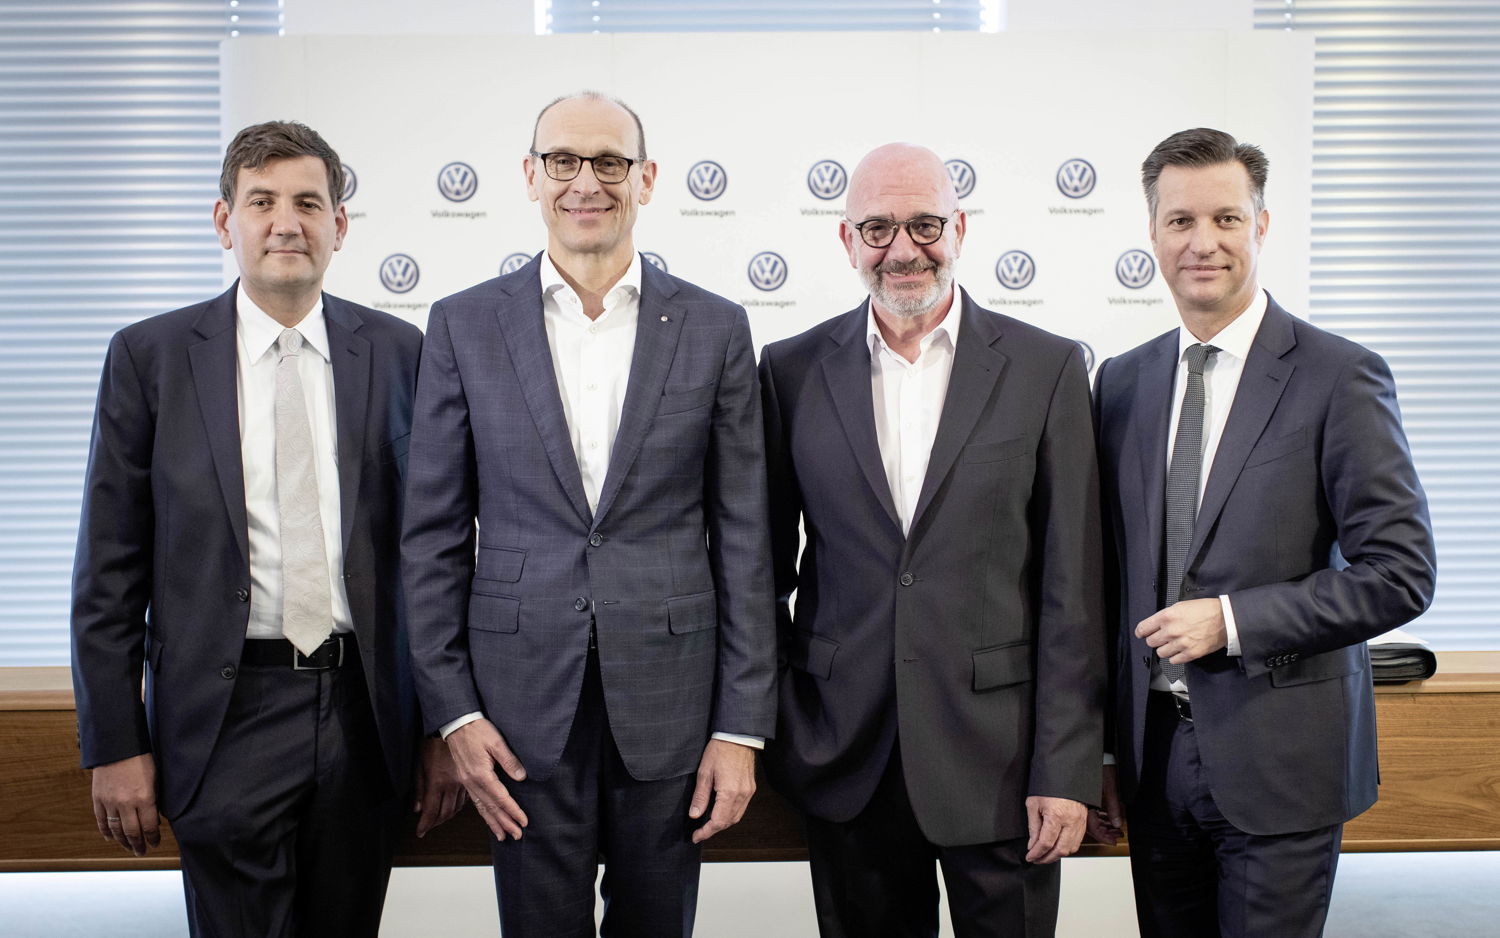 Gunnar Kilian, Miembro del Consejo para Recursos Humanos; Ralf Brandstätter, Director de Operaciones de la marca Volkswagen; Bernd Osterloh, Presidente del Consejo de Trabajo General, y Thomas Schmall, Director Ejecutivo de Componentes del Grupo Volkswagen.